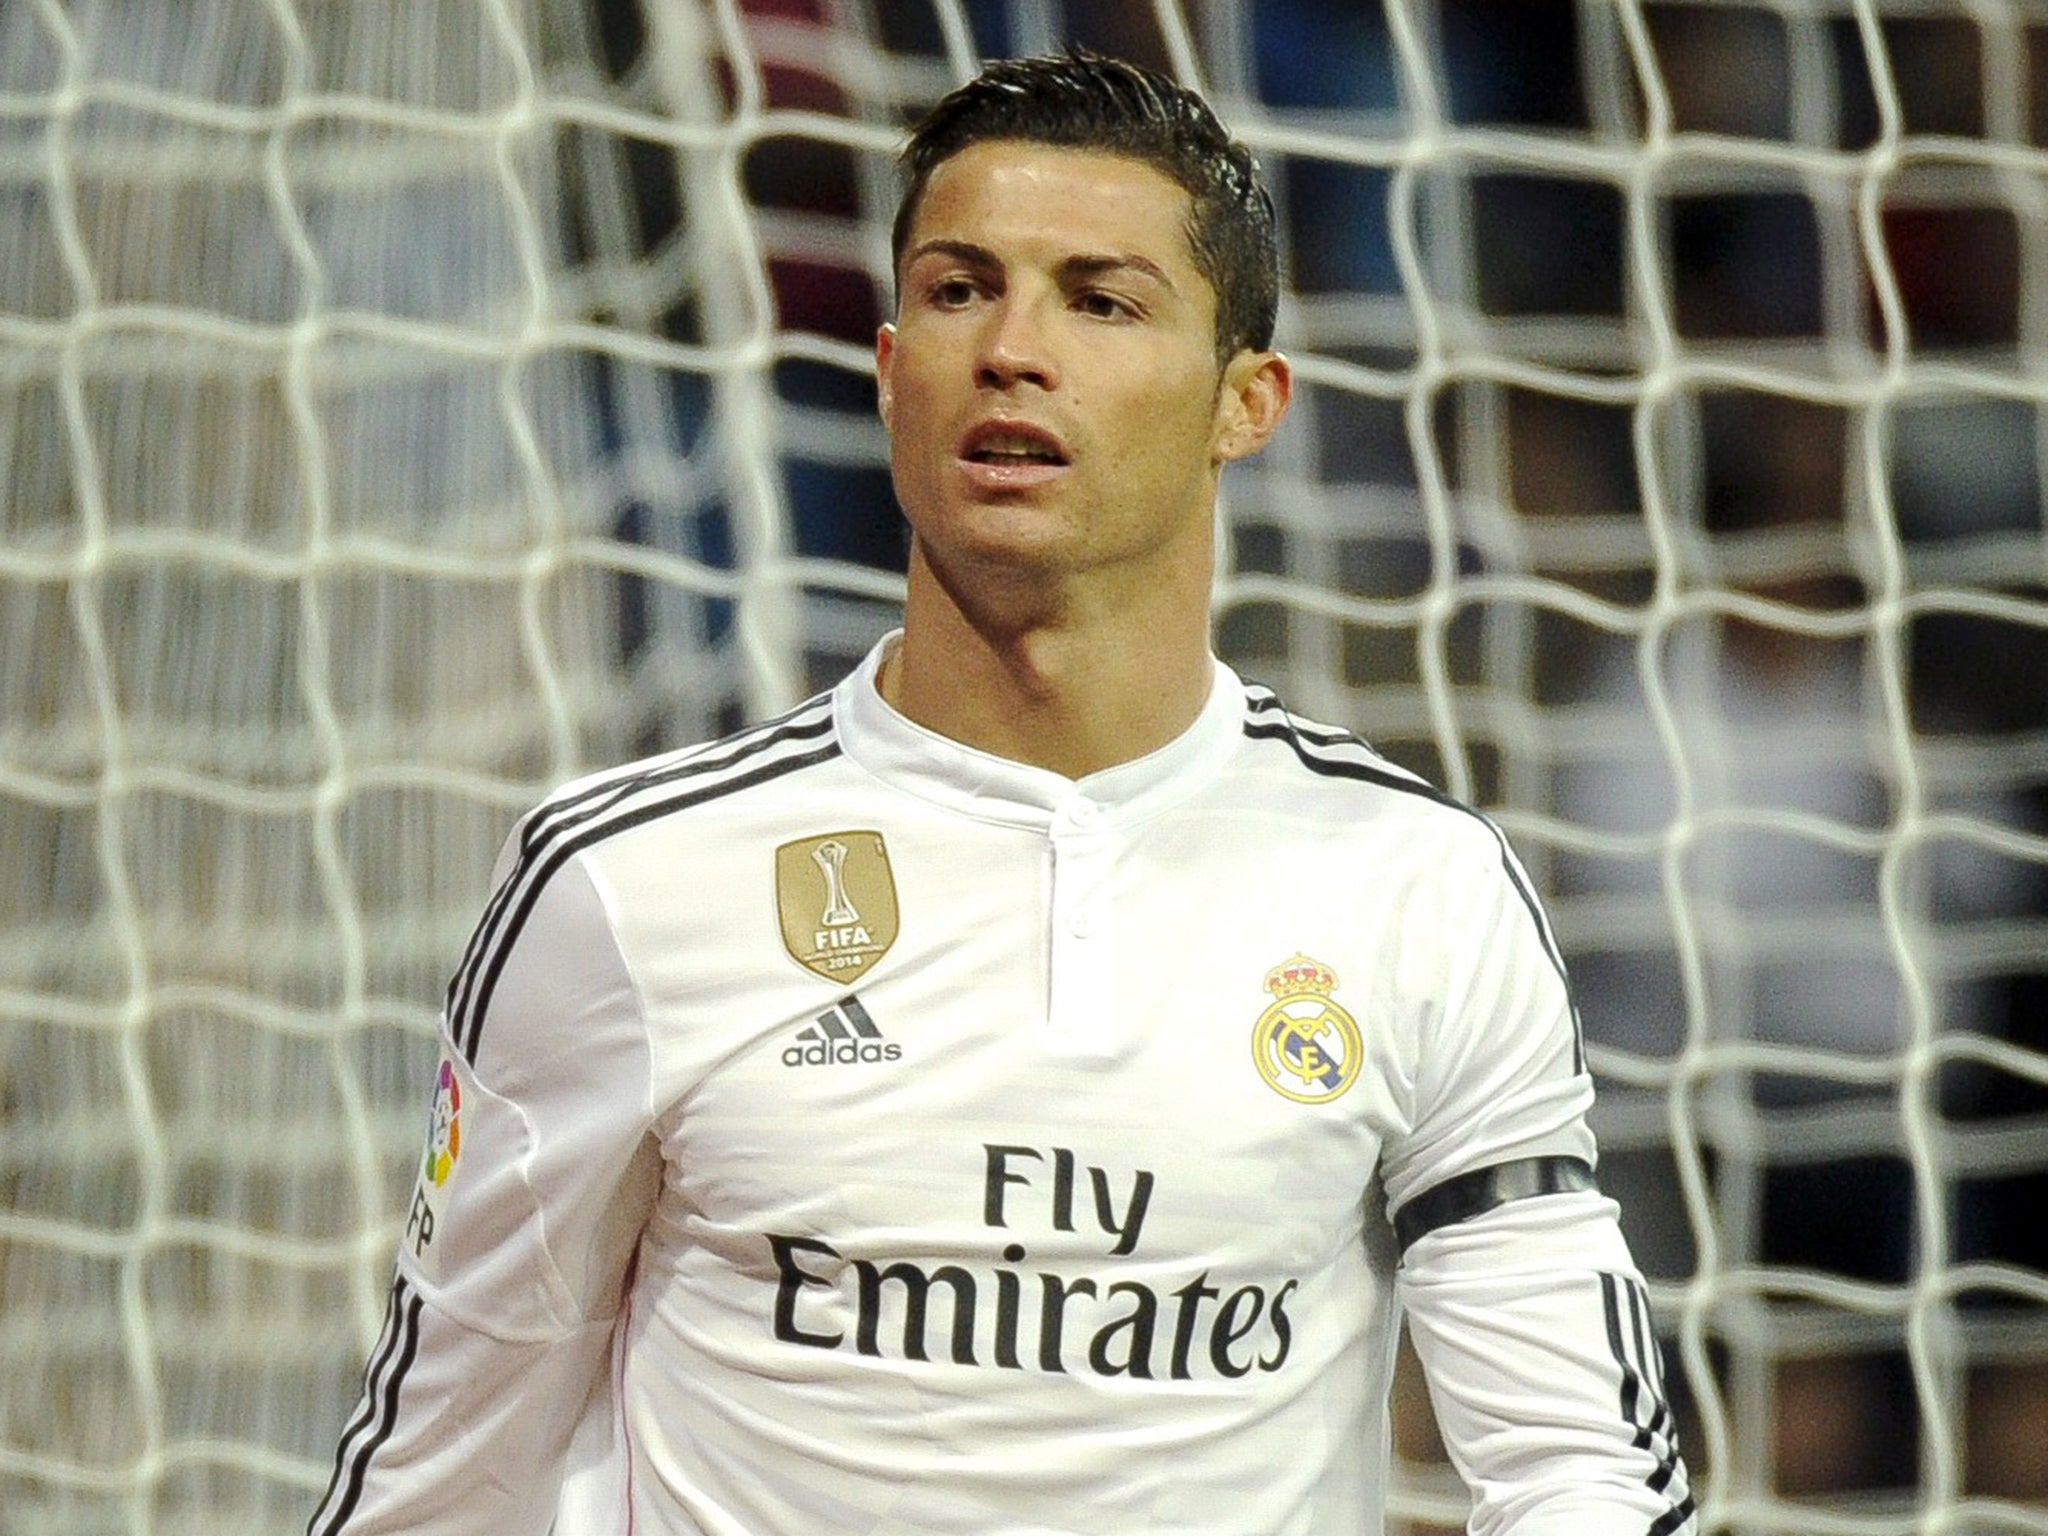 Ronaldo appeared to swear towards Real fans last weekend